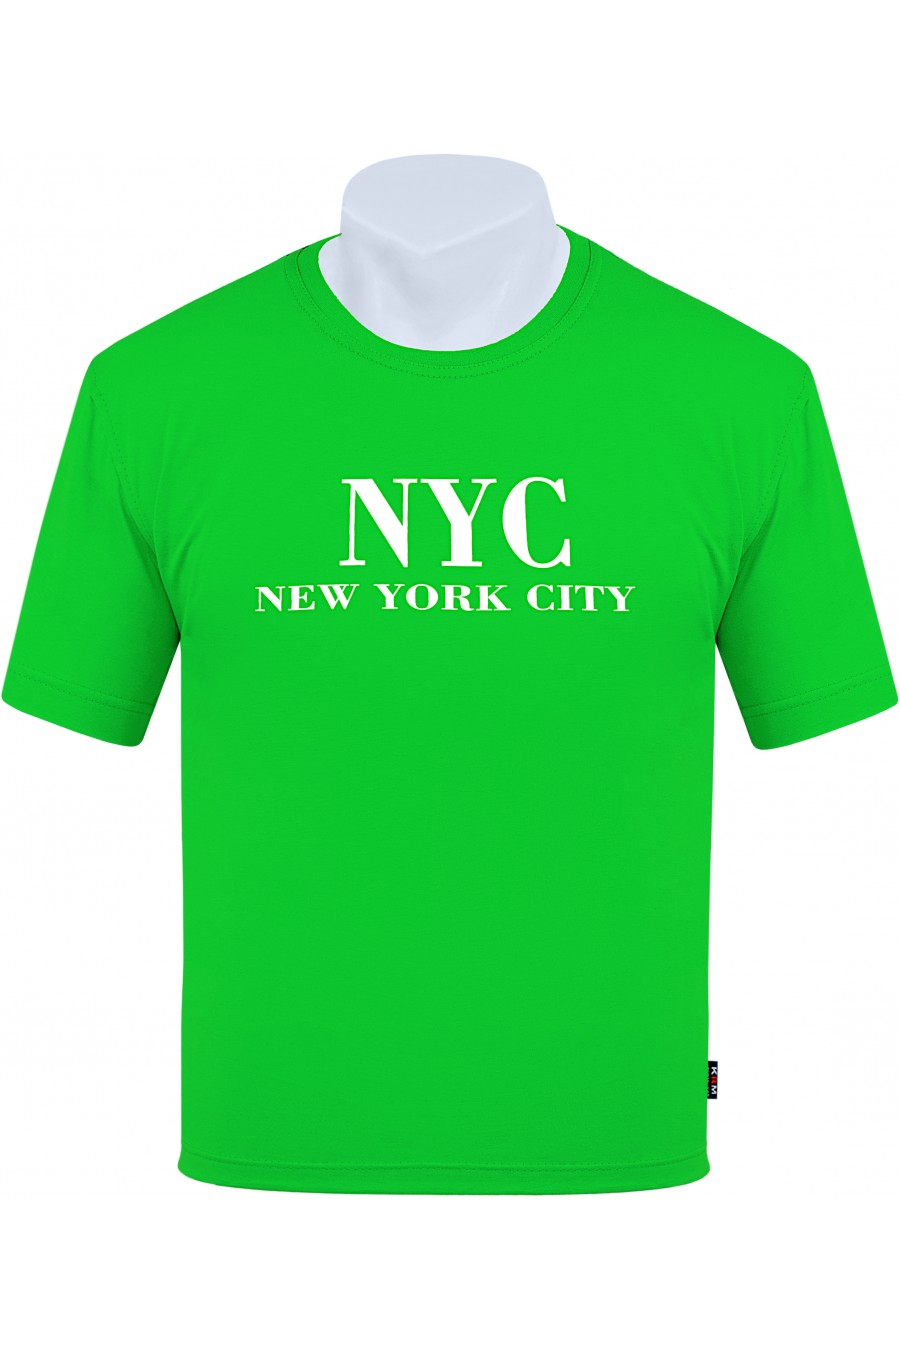 Koszulka NEW YORK CITY M-8XL bawełna zielona